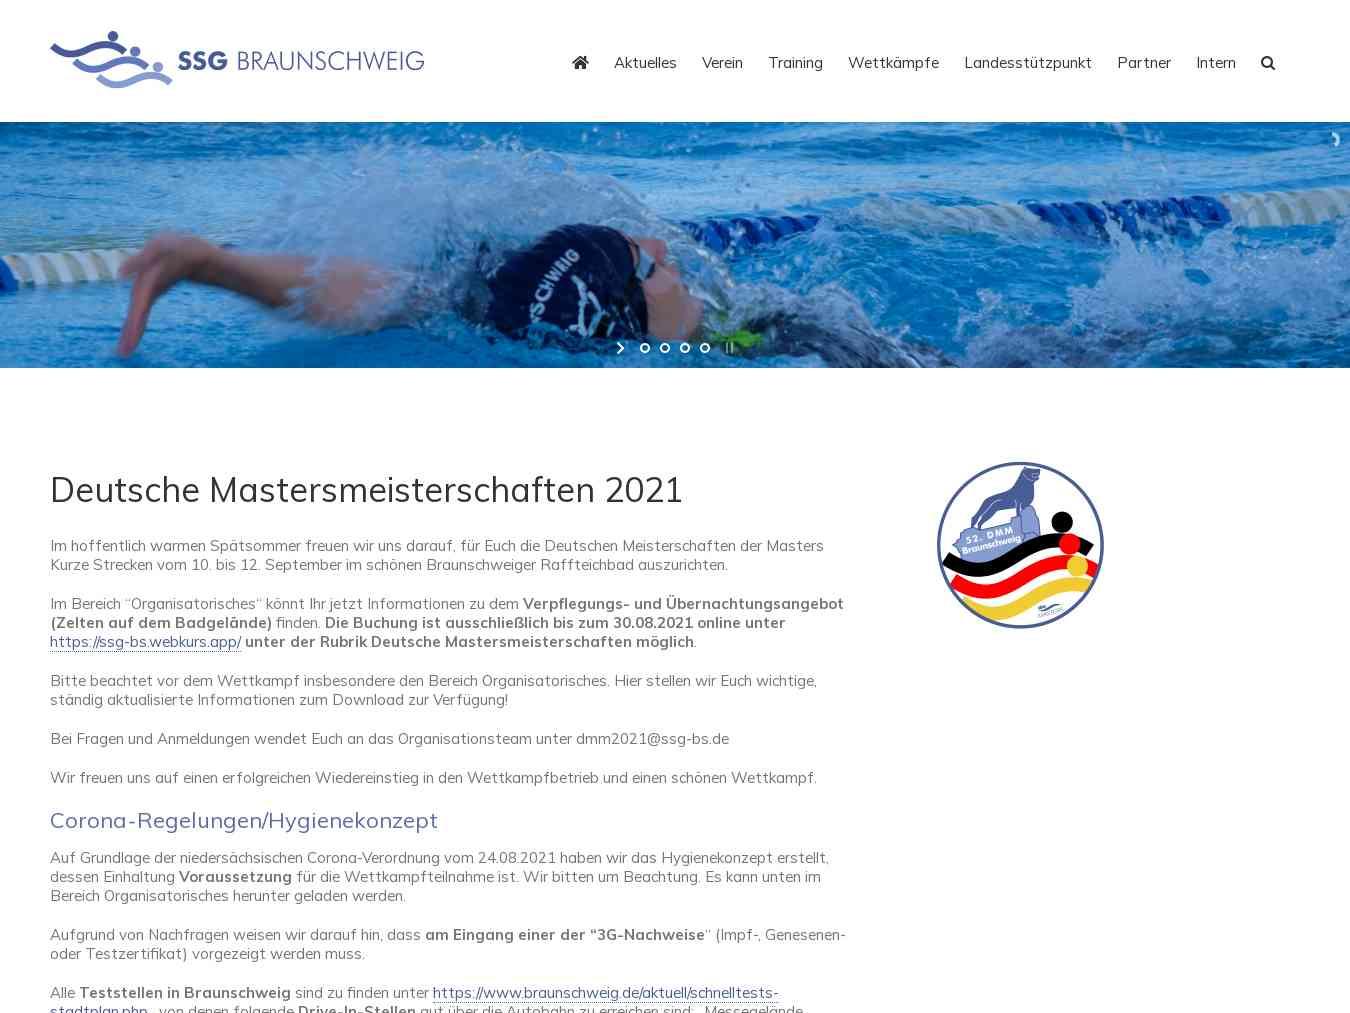 Veranstalterhomepage - https://www.ssg-bs.de/wettkaempfe/deutsche-mastersmeisterschaften-2021/